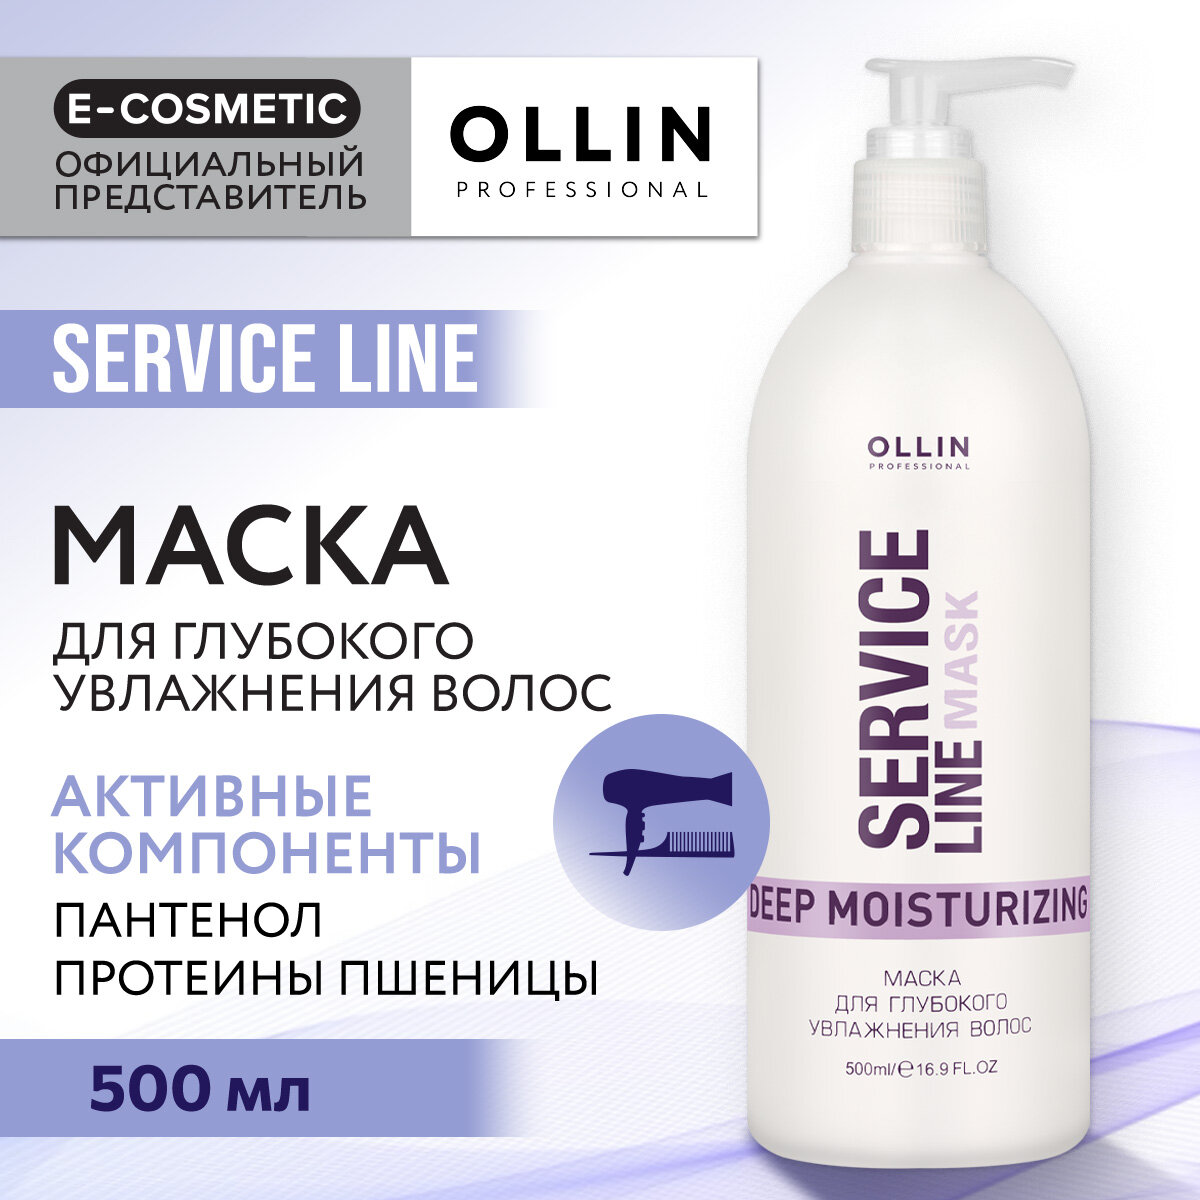 Ollin Professional Маска для глубокого увлажнения волос Deep Moisturizing Mask, 500 мл (Ollin Professional, ) - фото №5